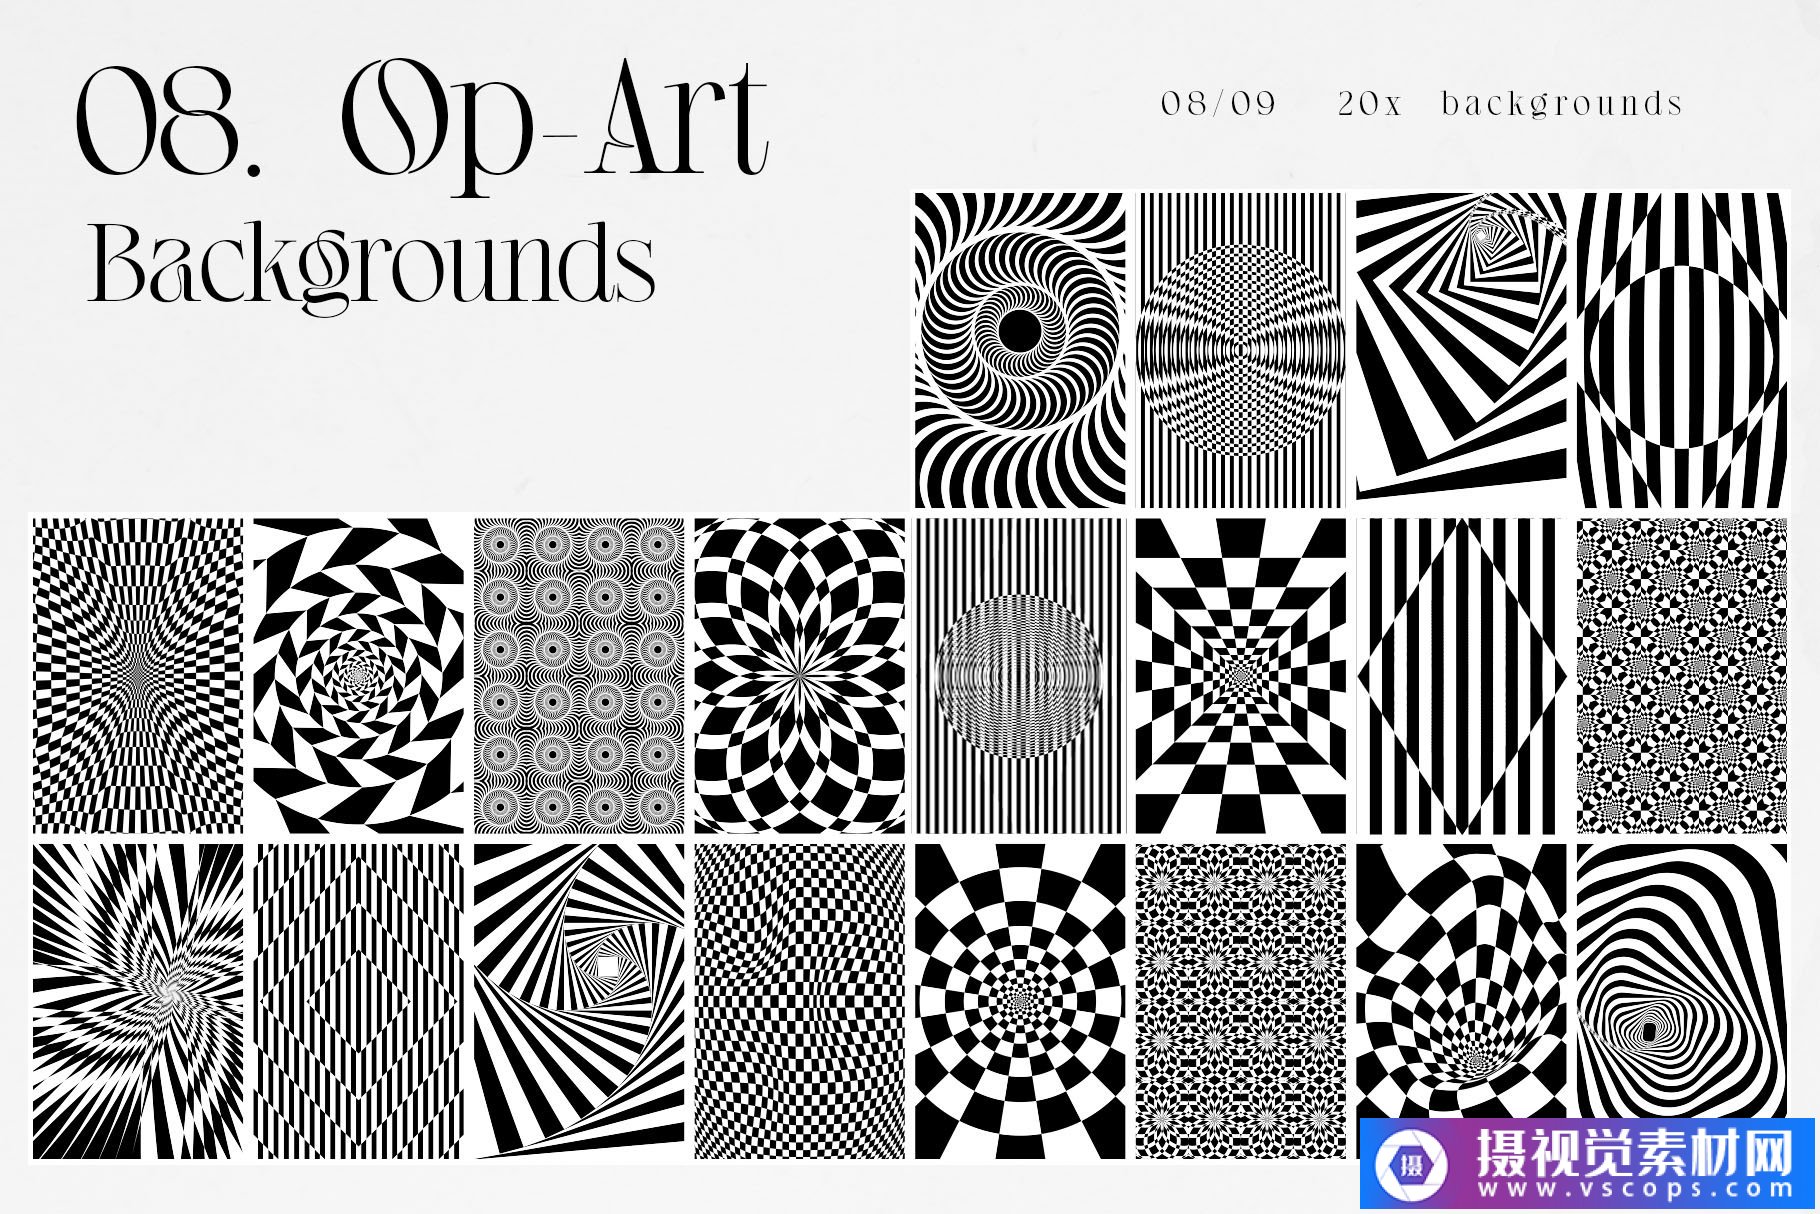 复古未来派欧普艺术抽象几何形状颗粒渐变纹理素材合集包 Shapes and Backgrounds Pack插图10